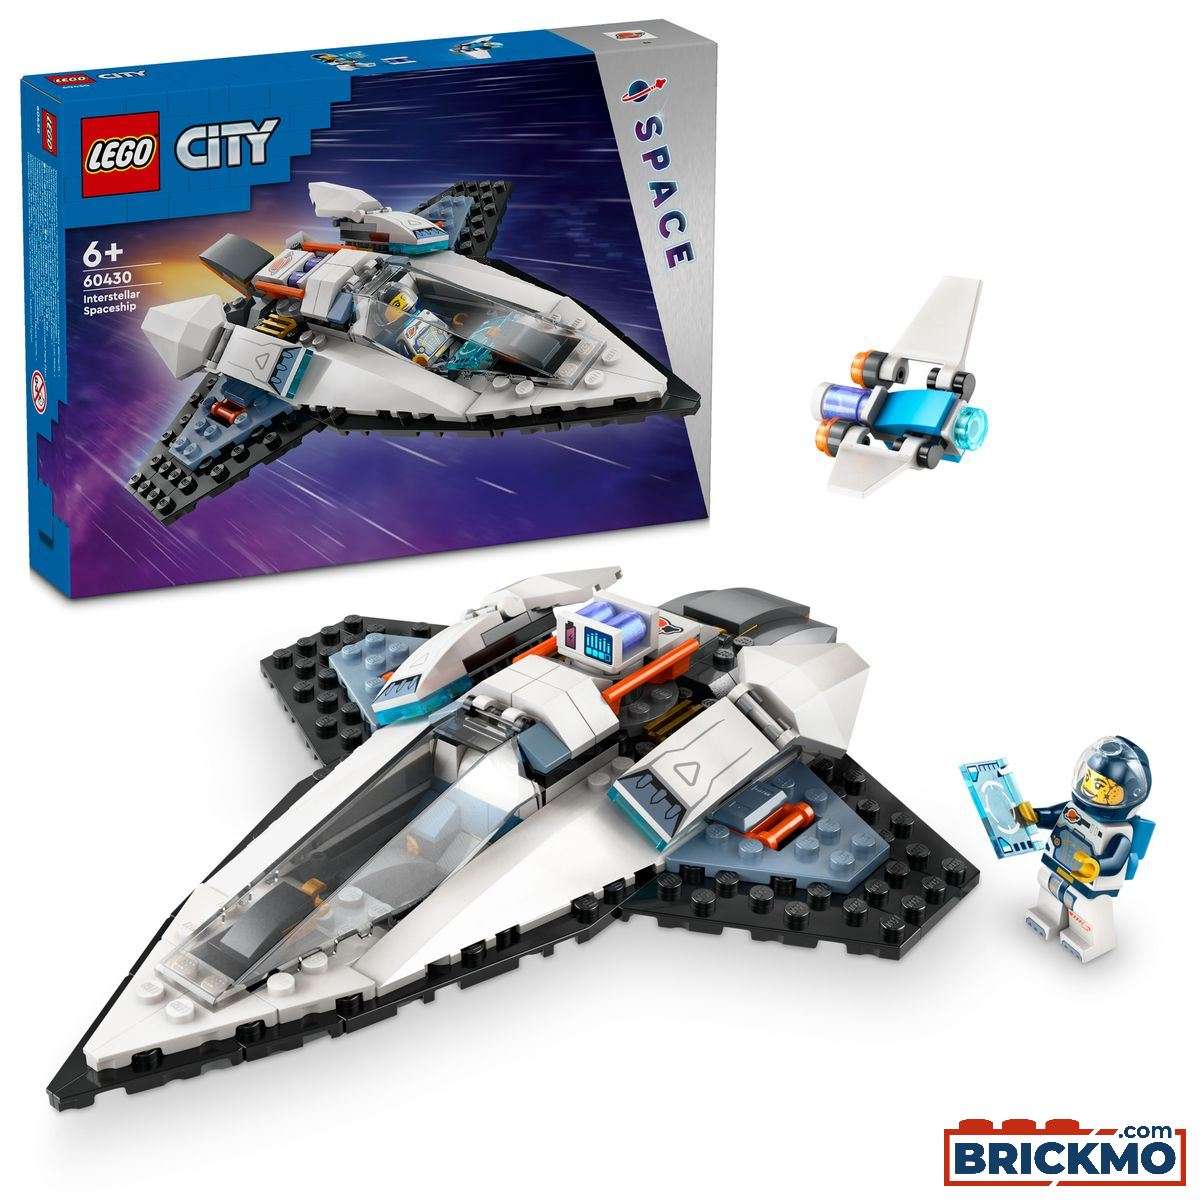 LEGO City 60430 Interstellar Spaceship 60430